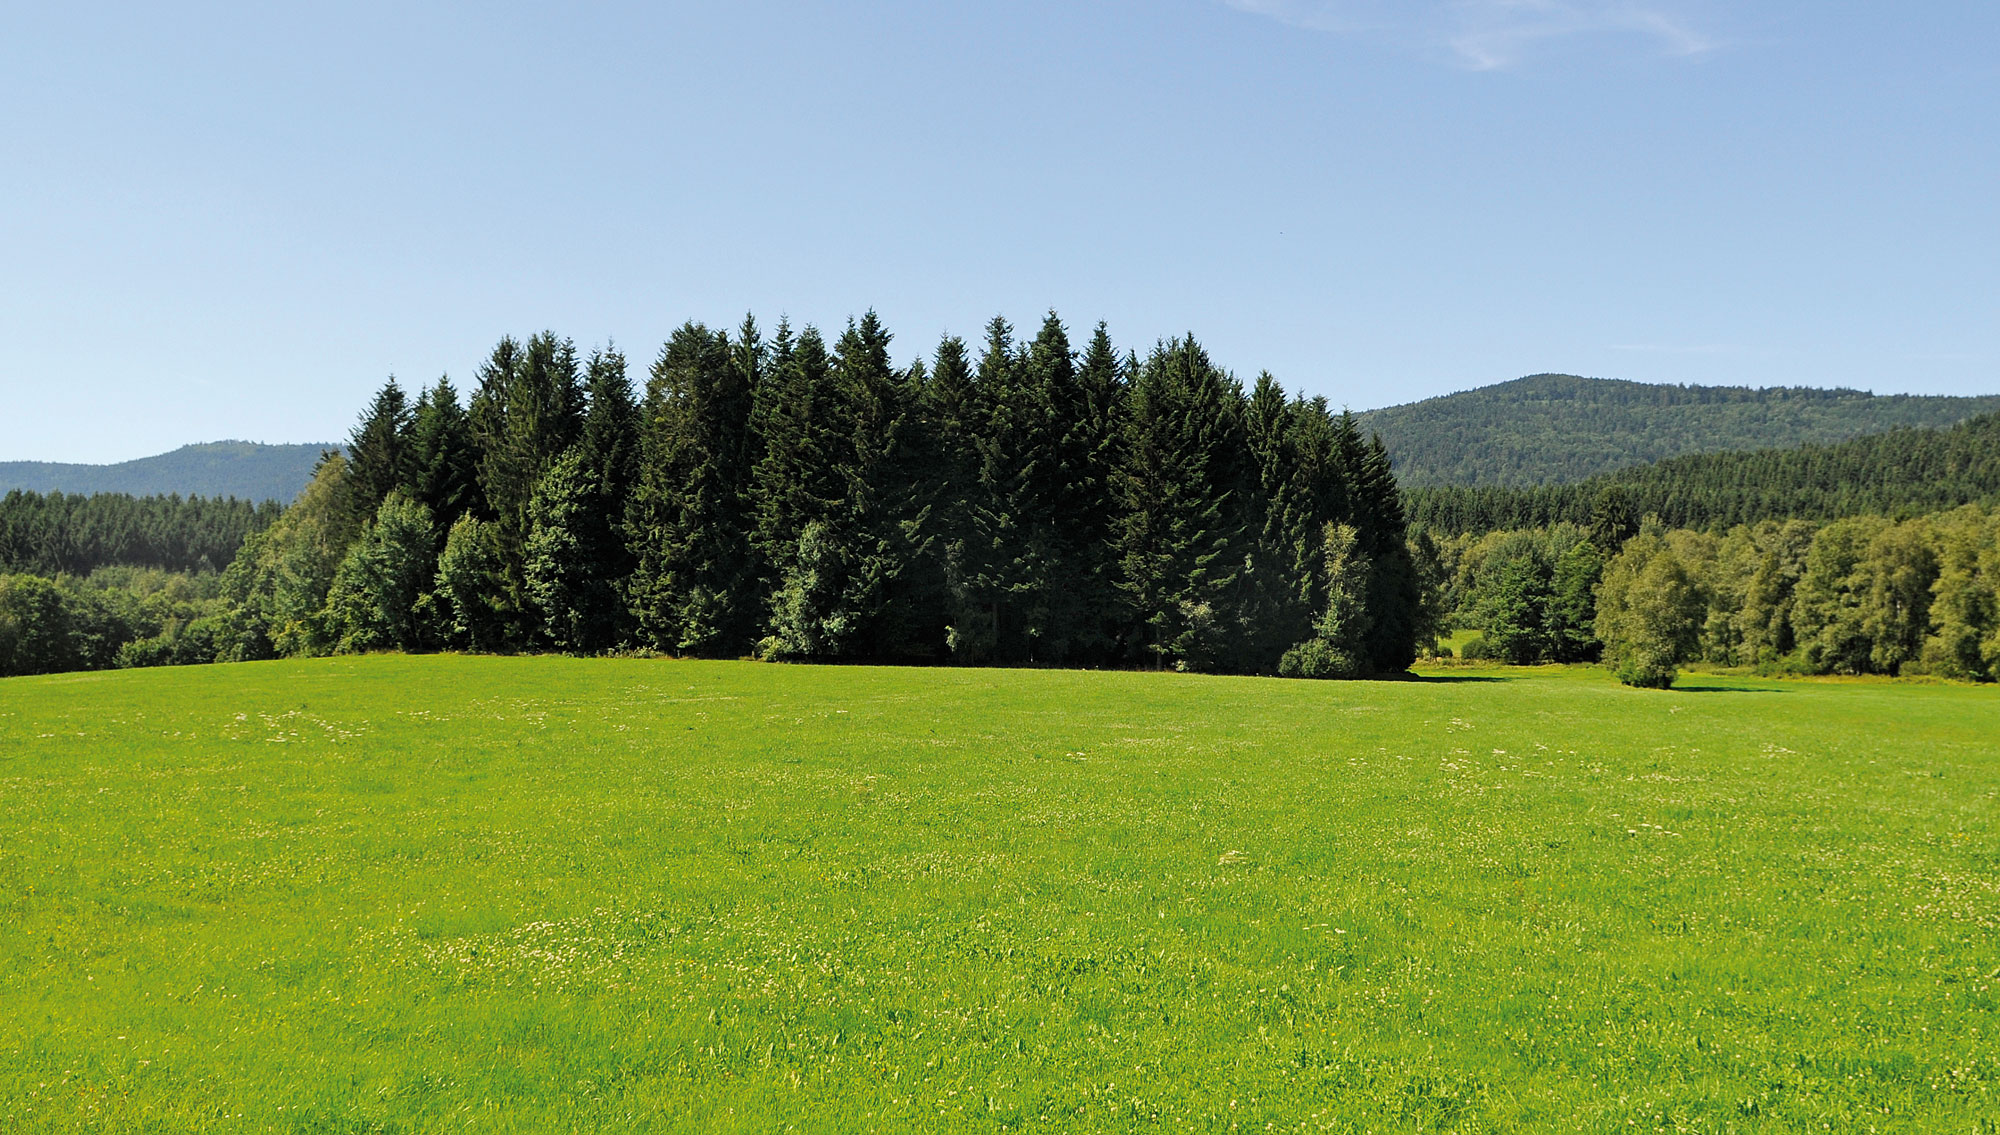 herrliche Natur in der Urlaubsregion Bayerischer Wald